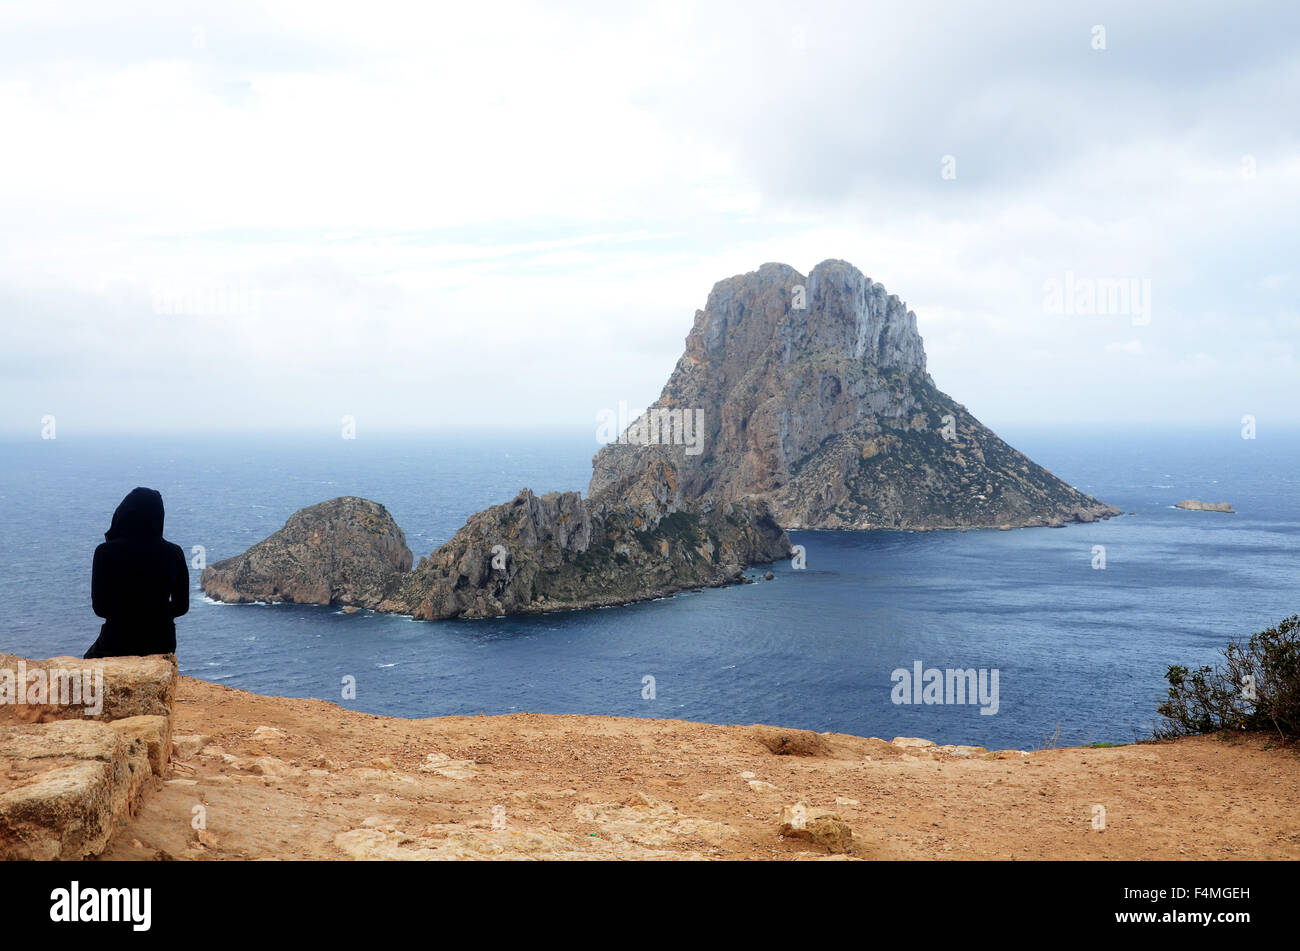 ES VEDRA, un disabitata isola di roccia si trova a 2 km al largo della costa occidentale dell'isola di Ibiza in Cala d'Hort area. Foto Stock